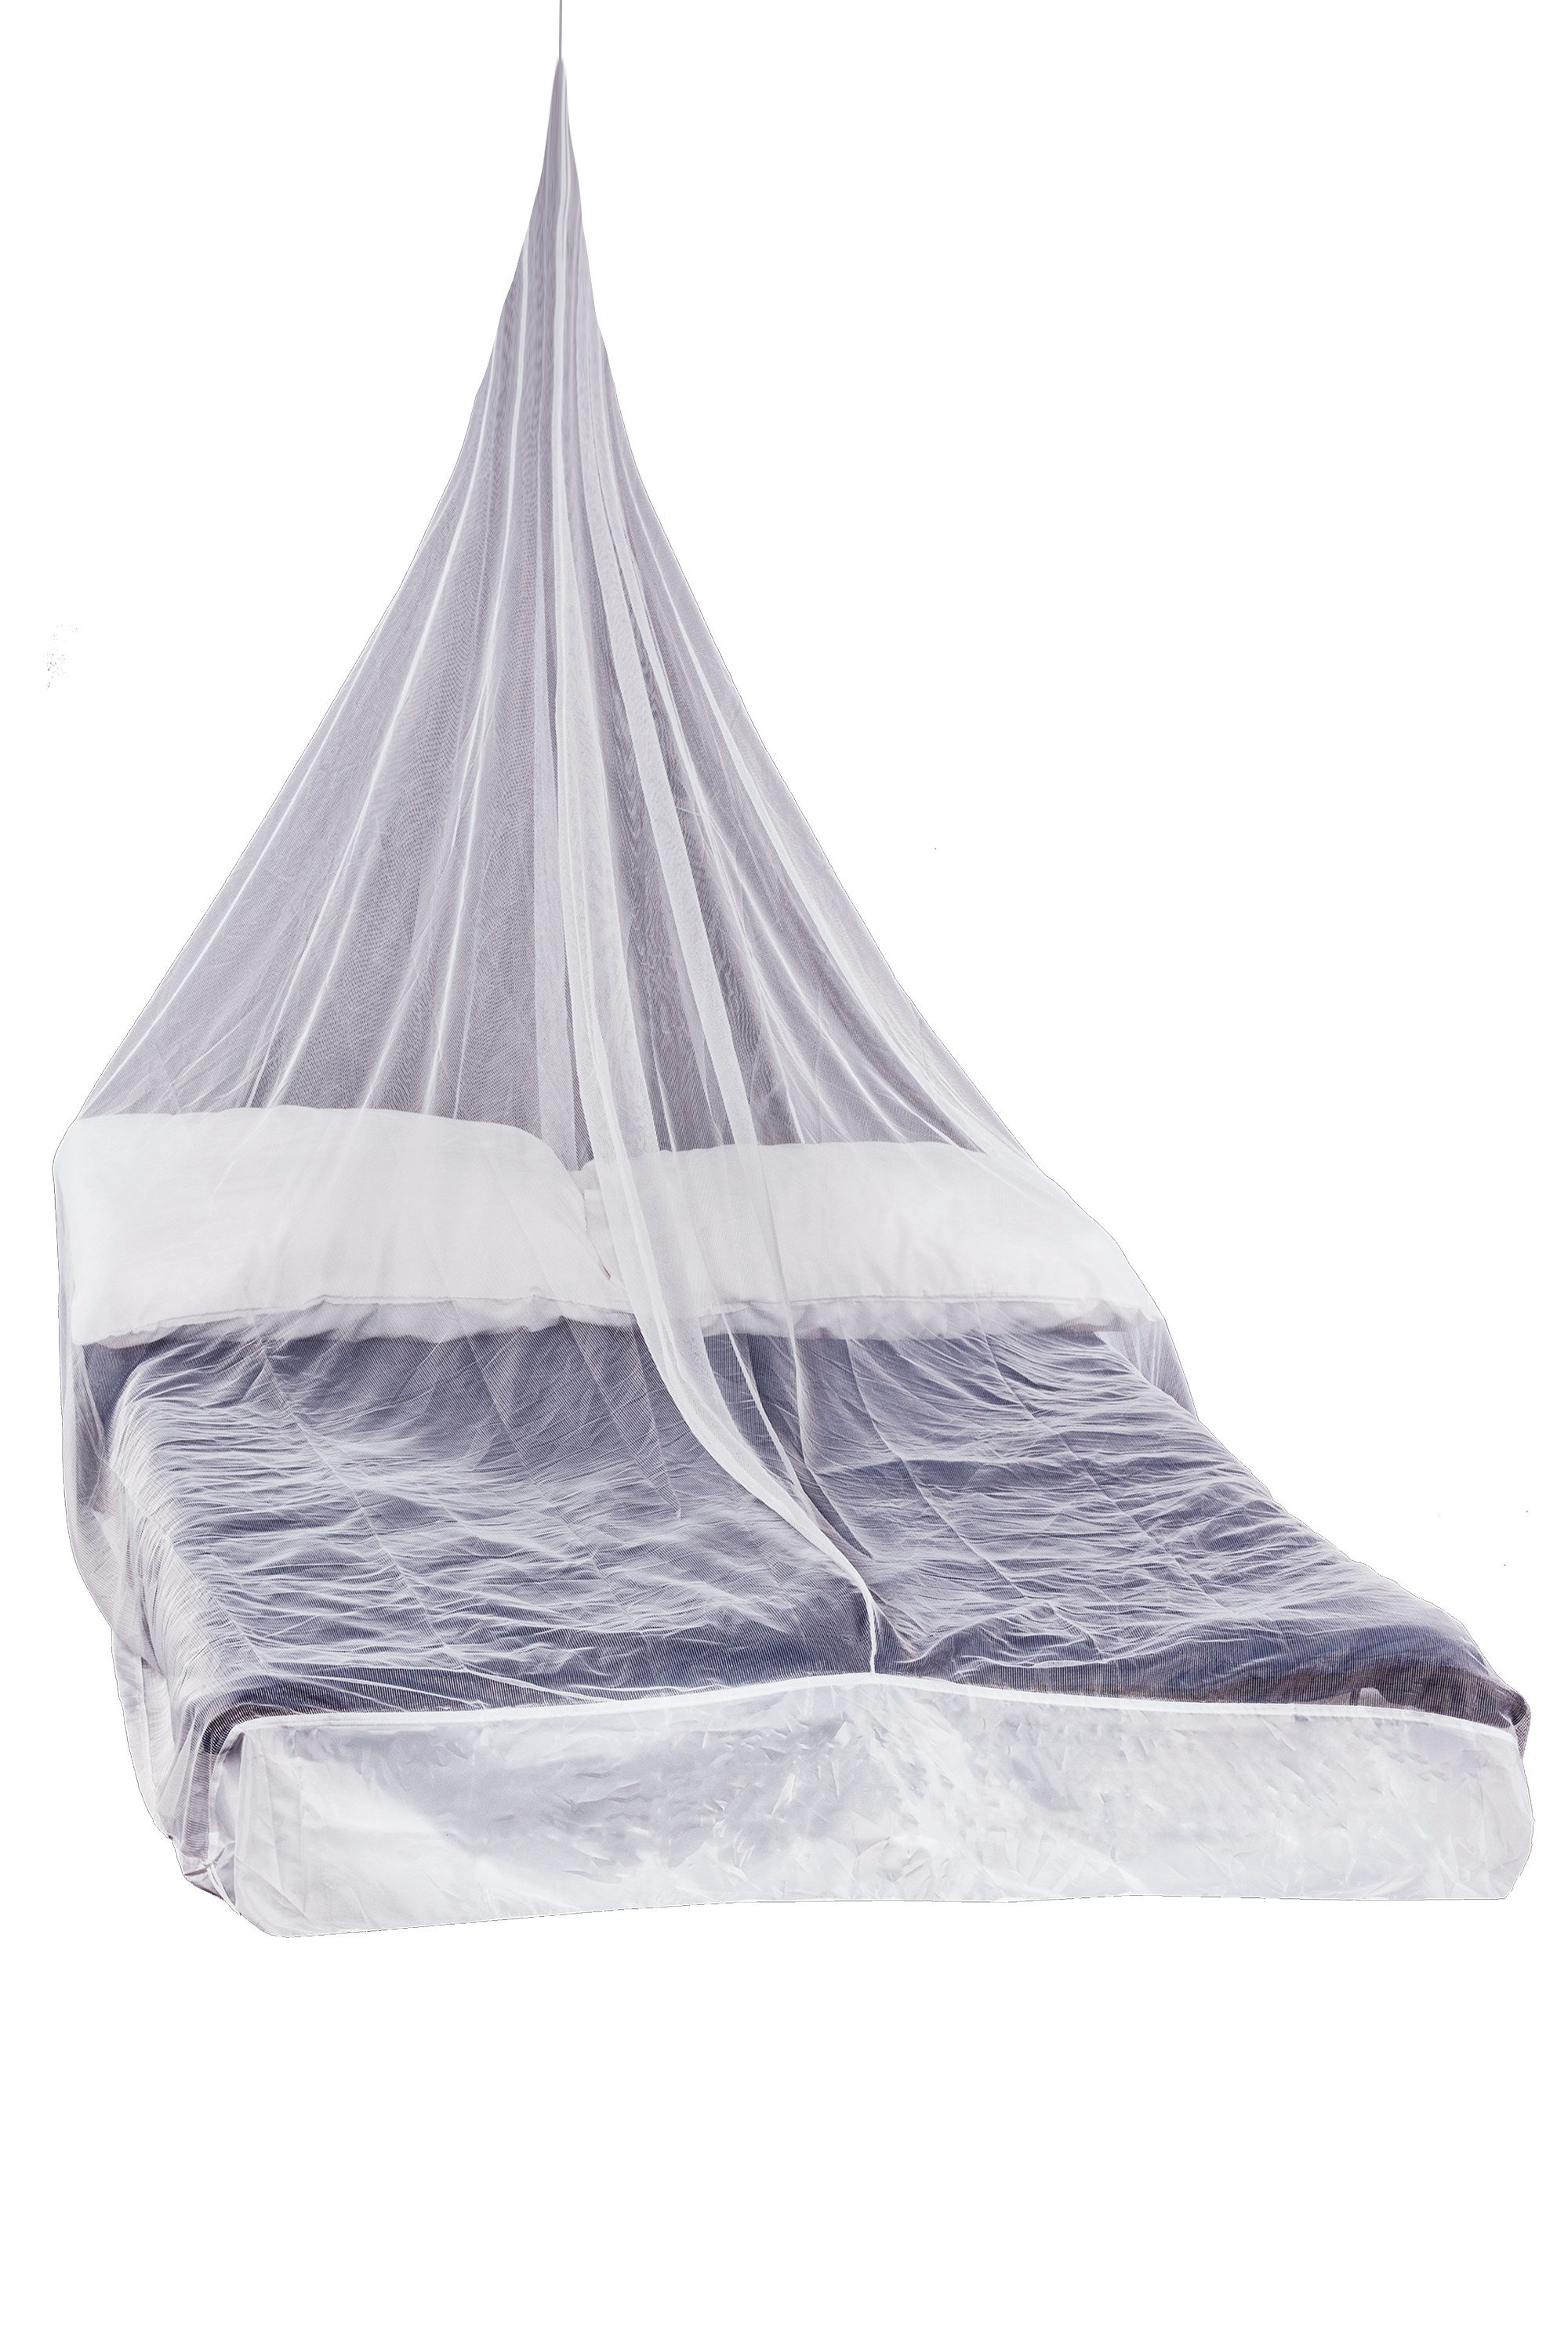 where to buy mosquito netting